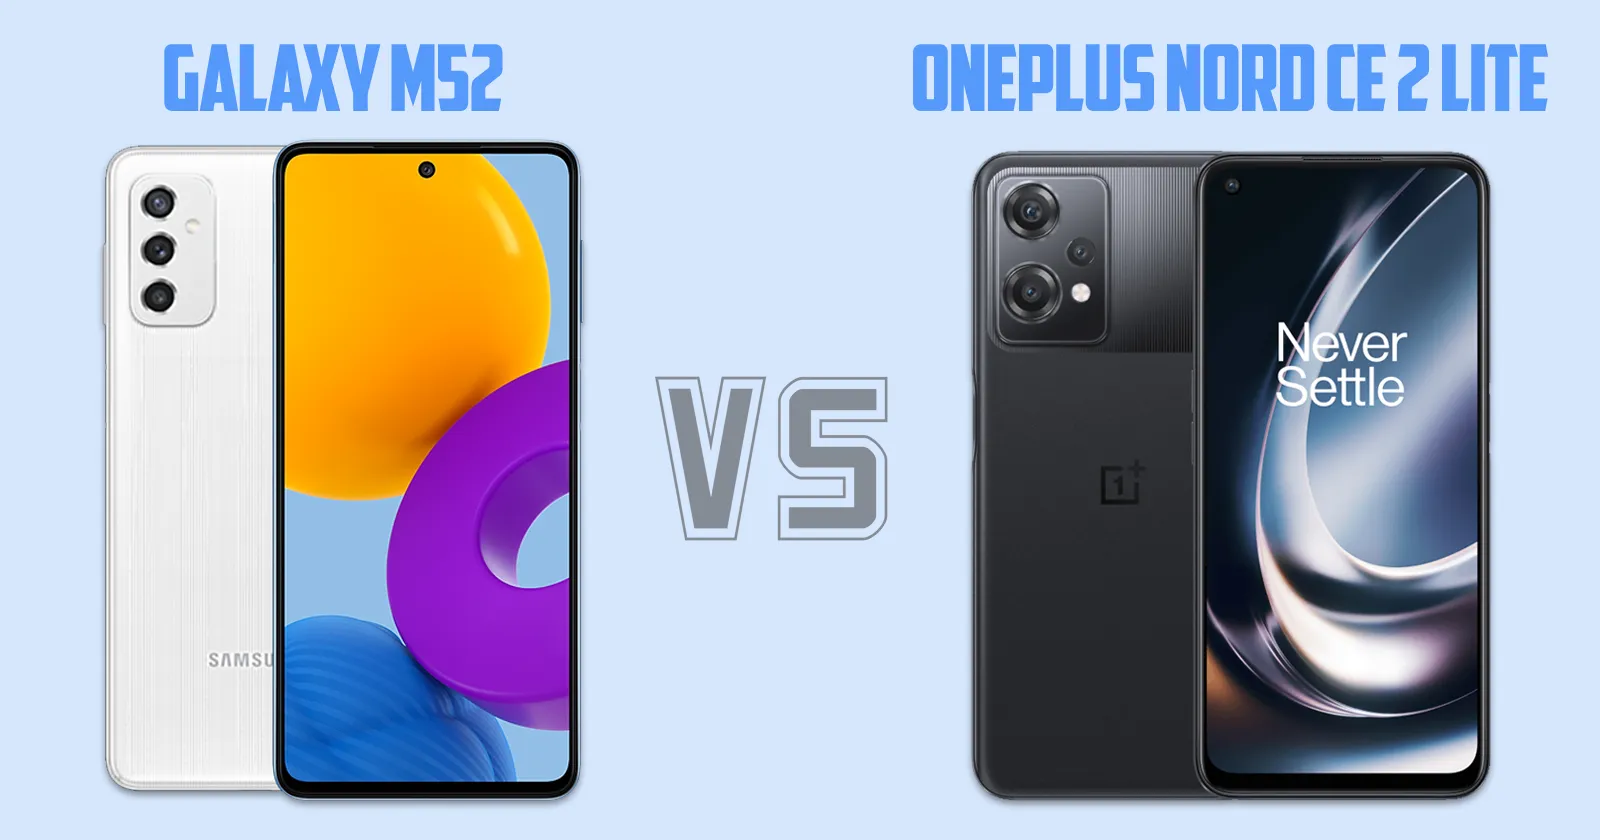 Samsung Galaxy M52 vs OnePlus Nord CE 2 Lite [ Full Comparison ]